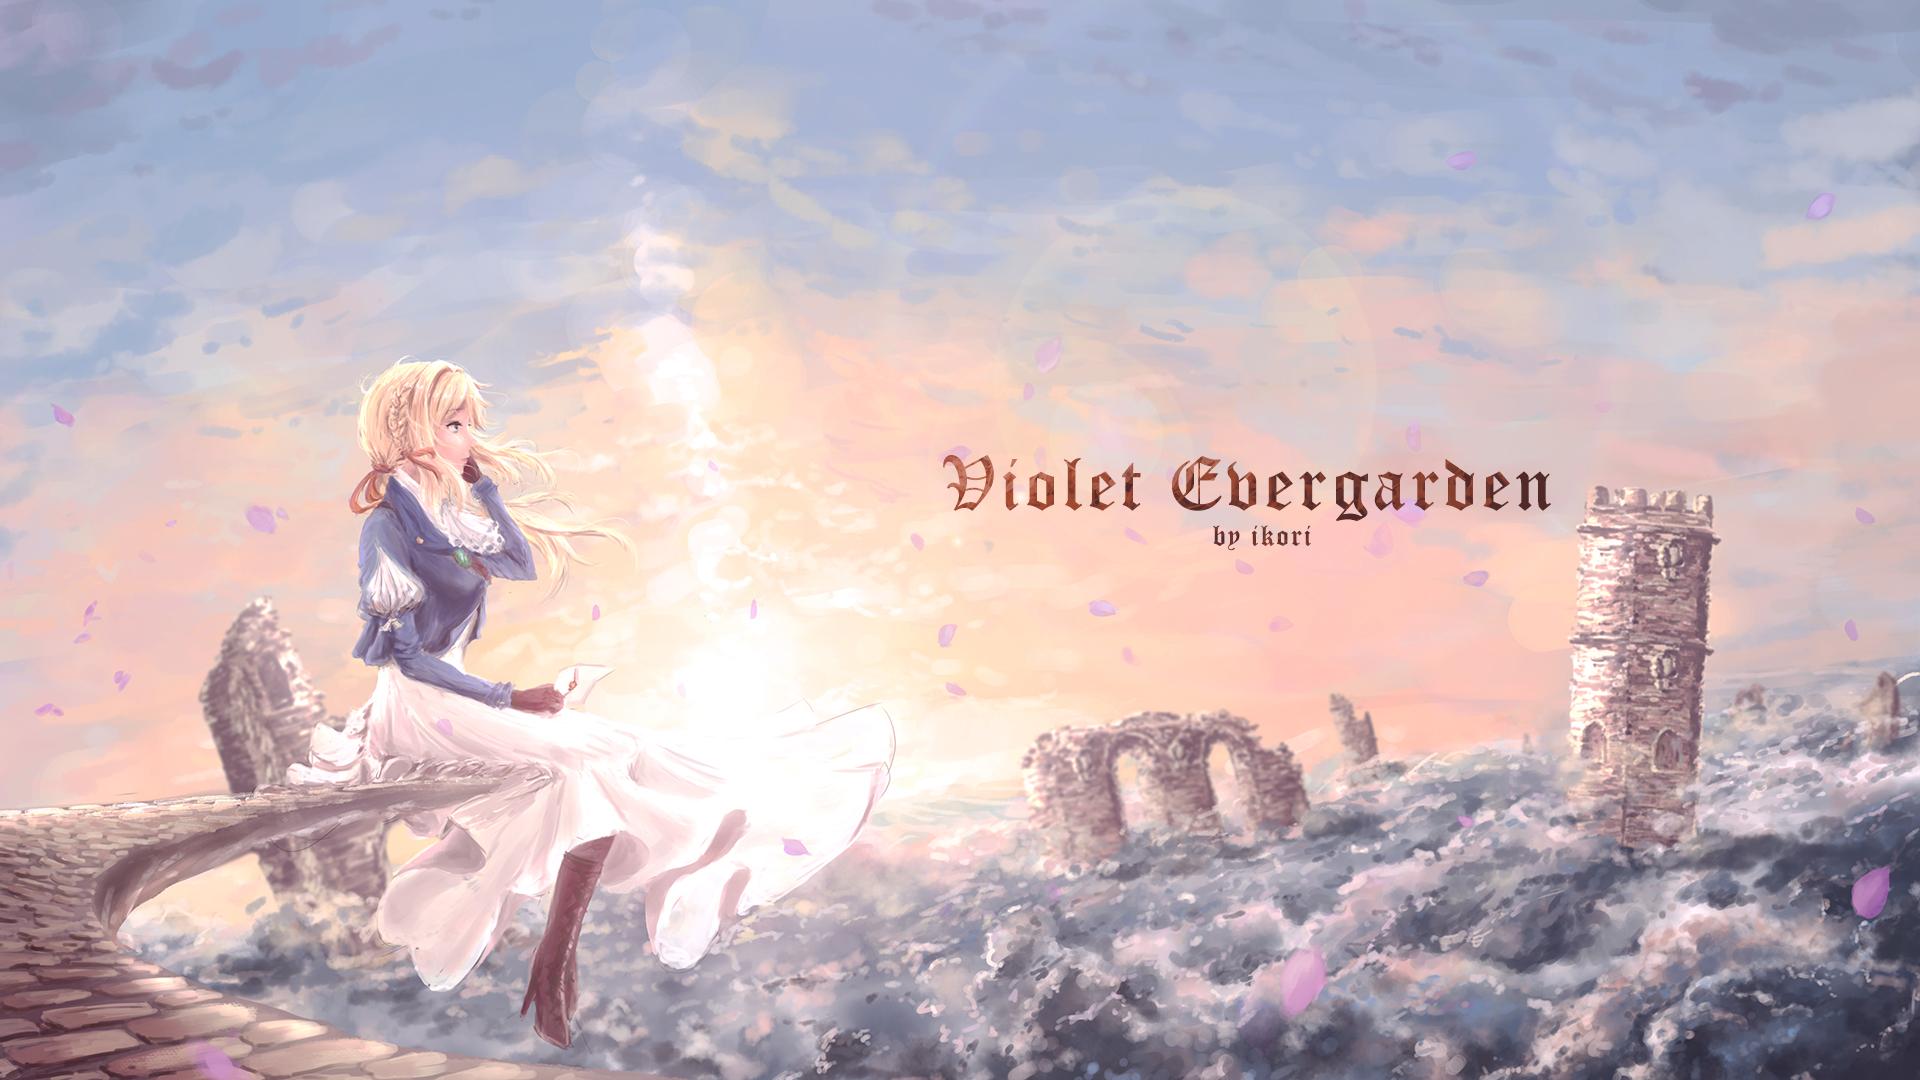 1920 x 1080 · jpeg - Violet Evergarden (Character) Wallpaper #2259322 - Zerochan Anime Image ...